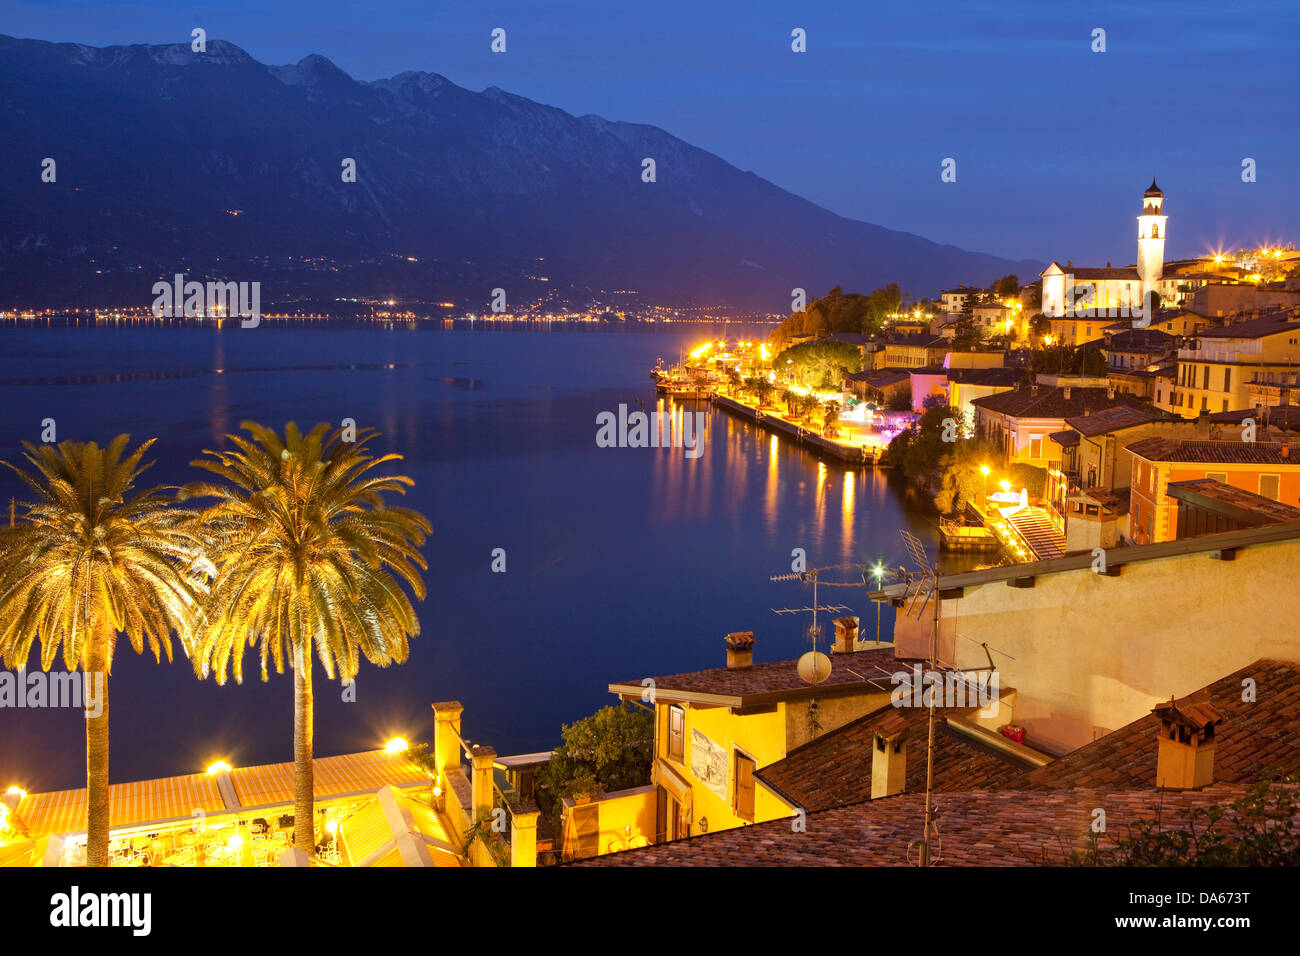 Limone, lago di Garda, panorama, Italia, Europa, lago, laghi, villaggio, di notte, luci Foto Stock